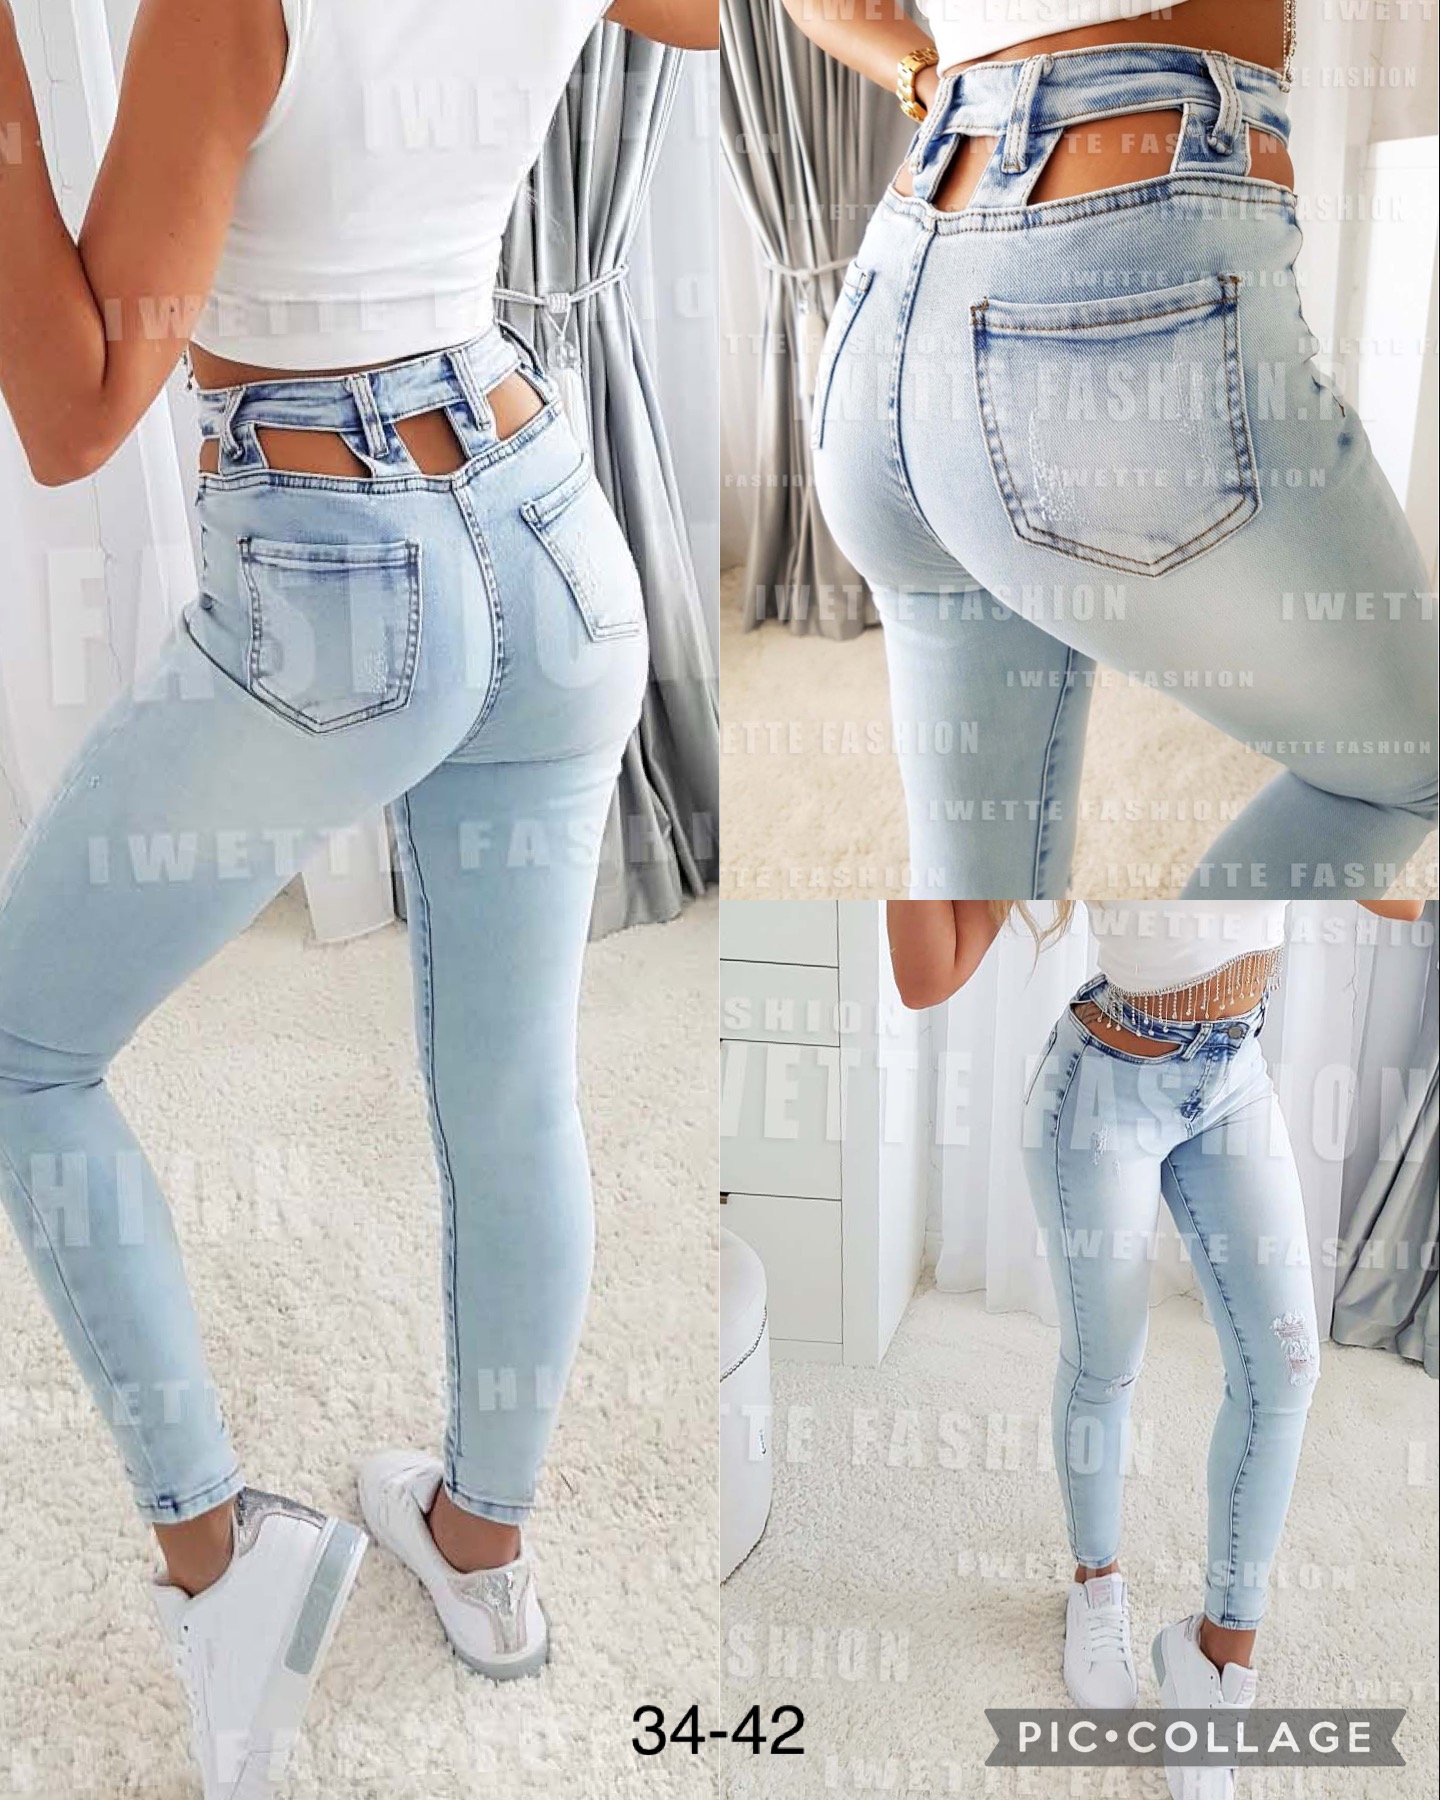 Spodnie damskie jeans Roz 34-42. 1 kolor .  Paczka 10szt